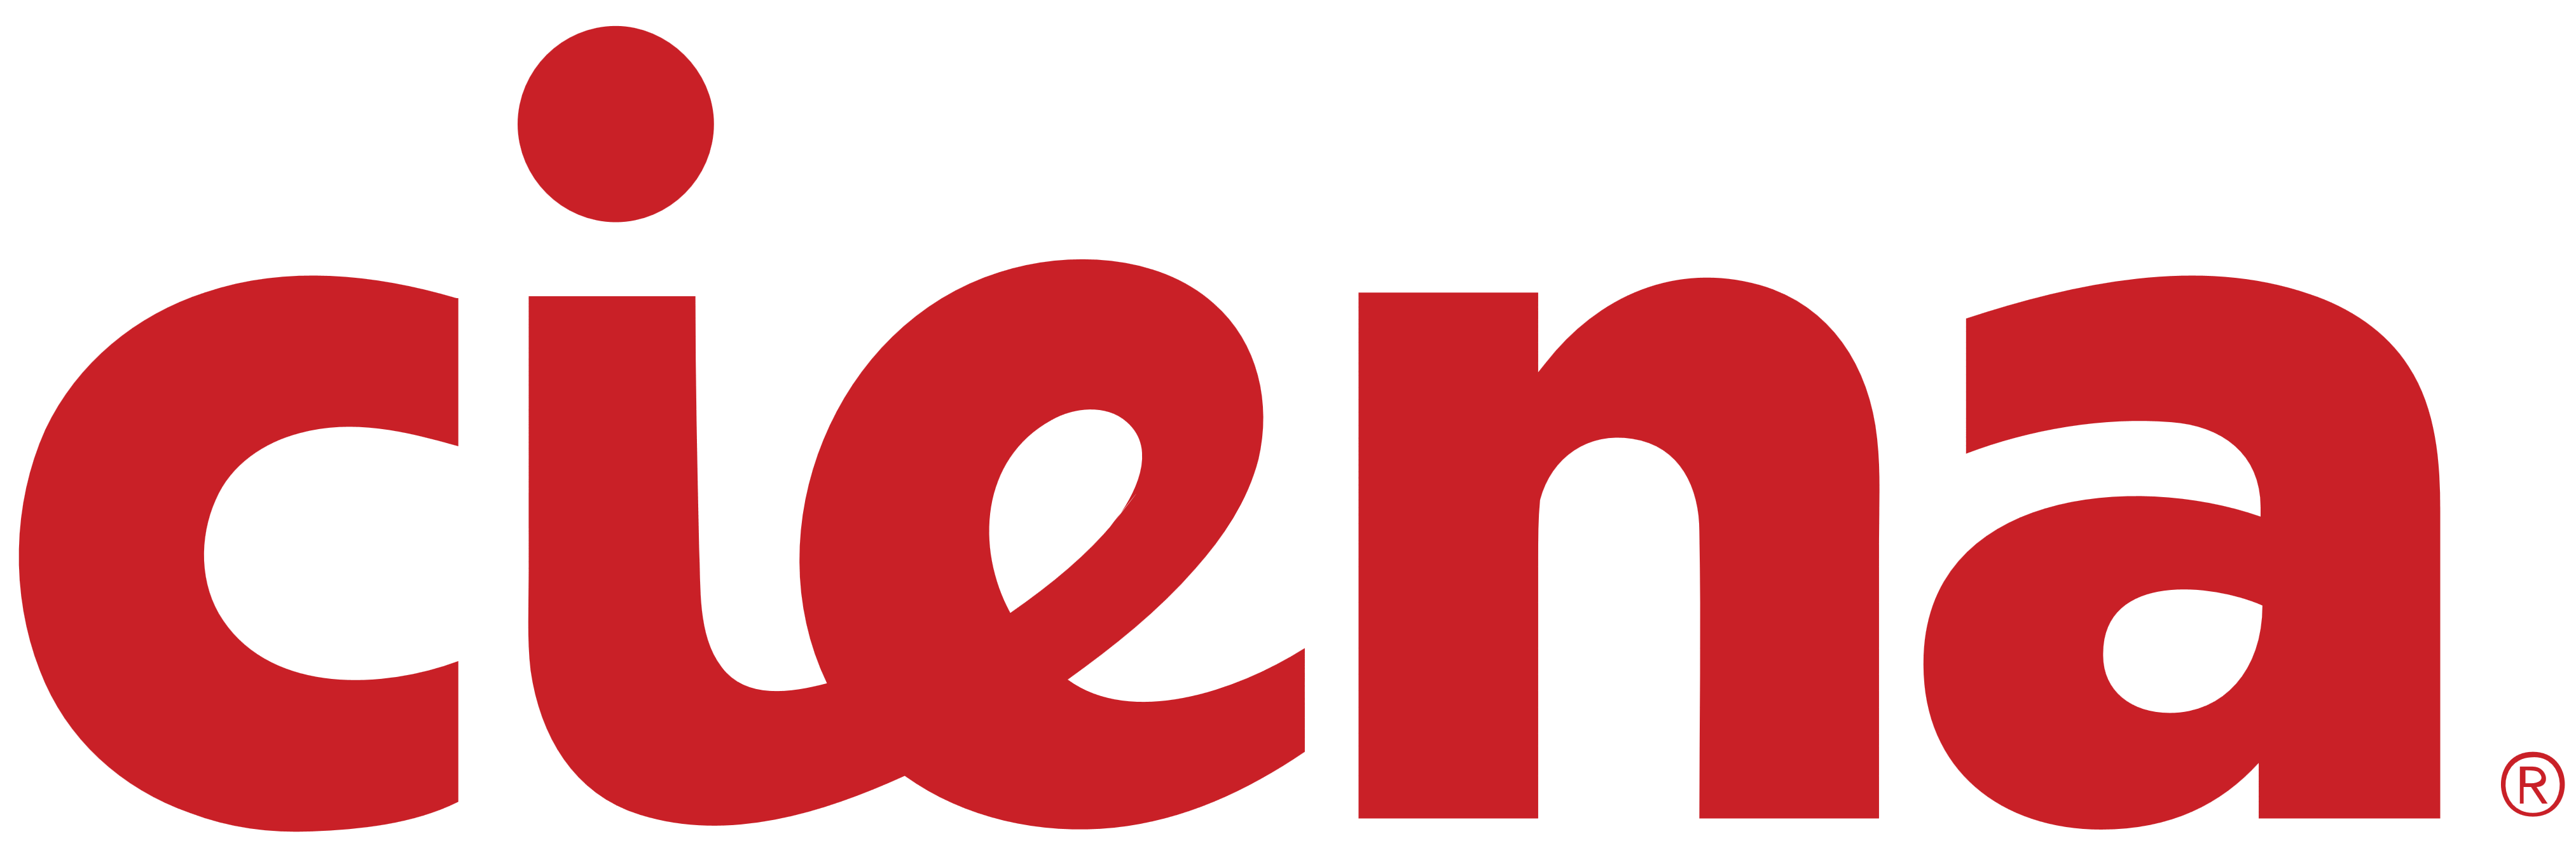 Ciena_logo